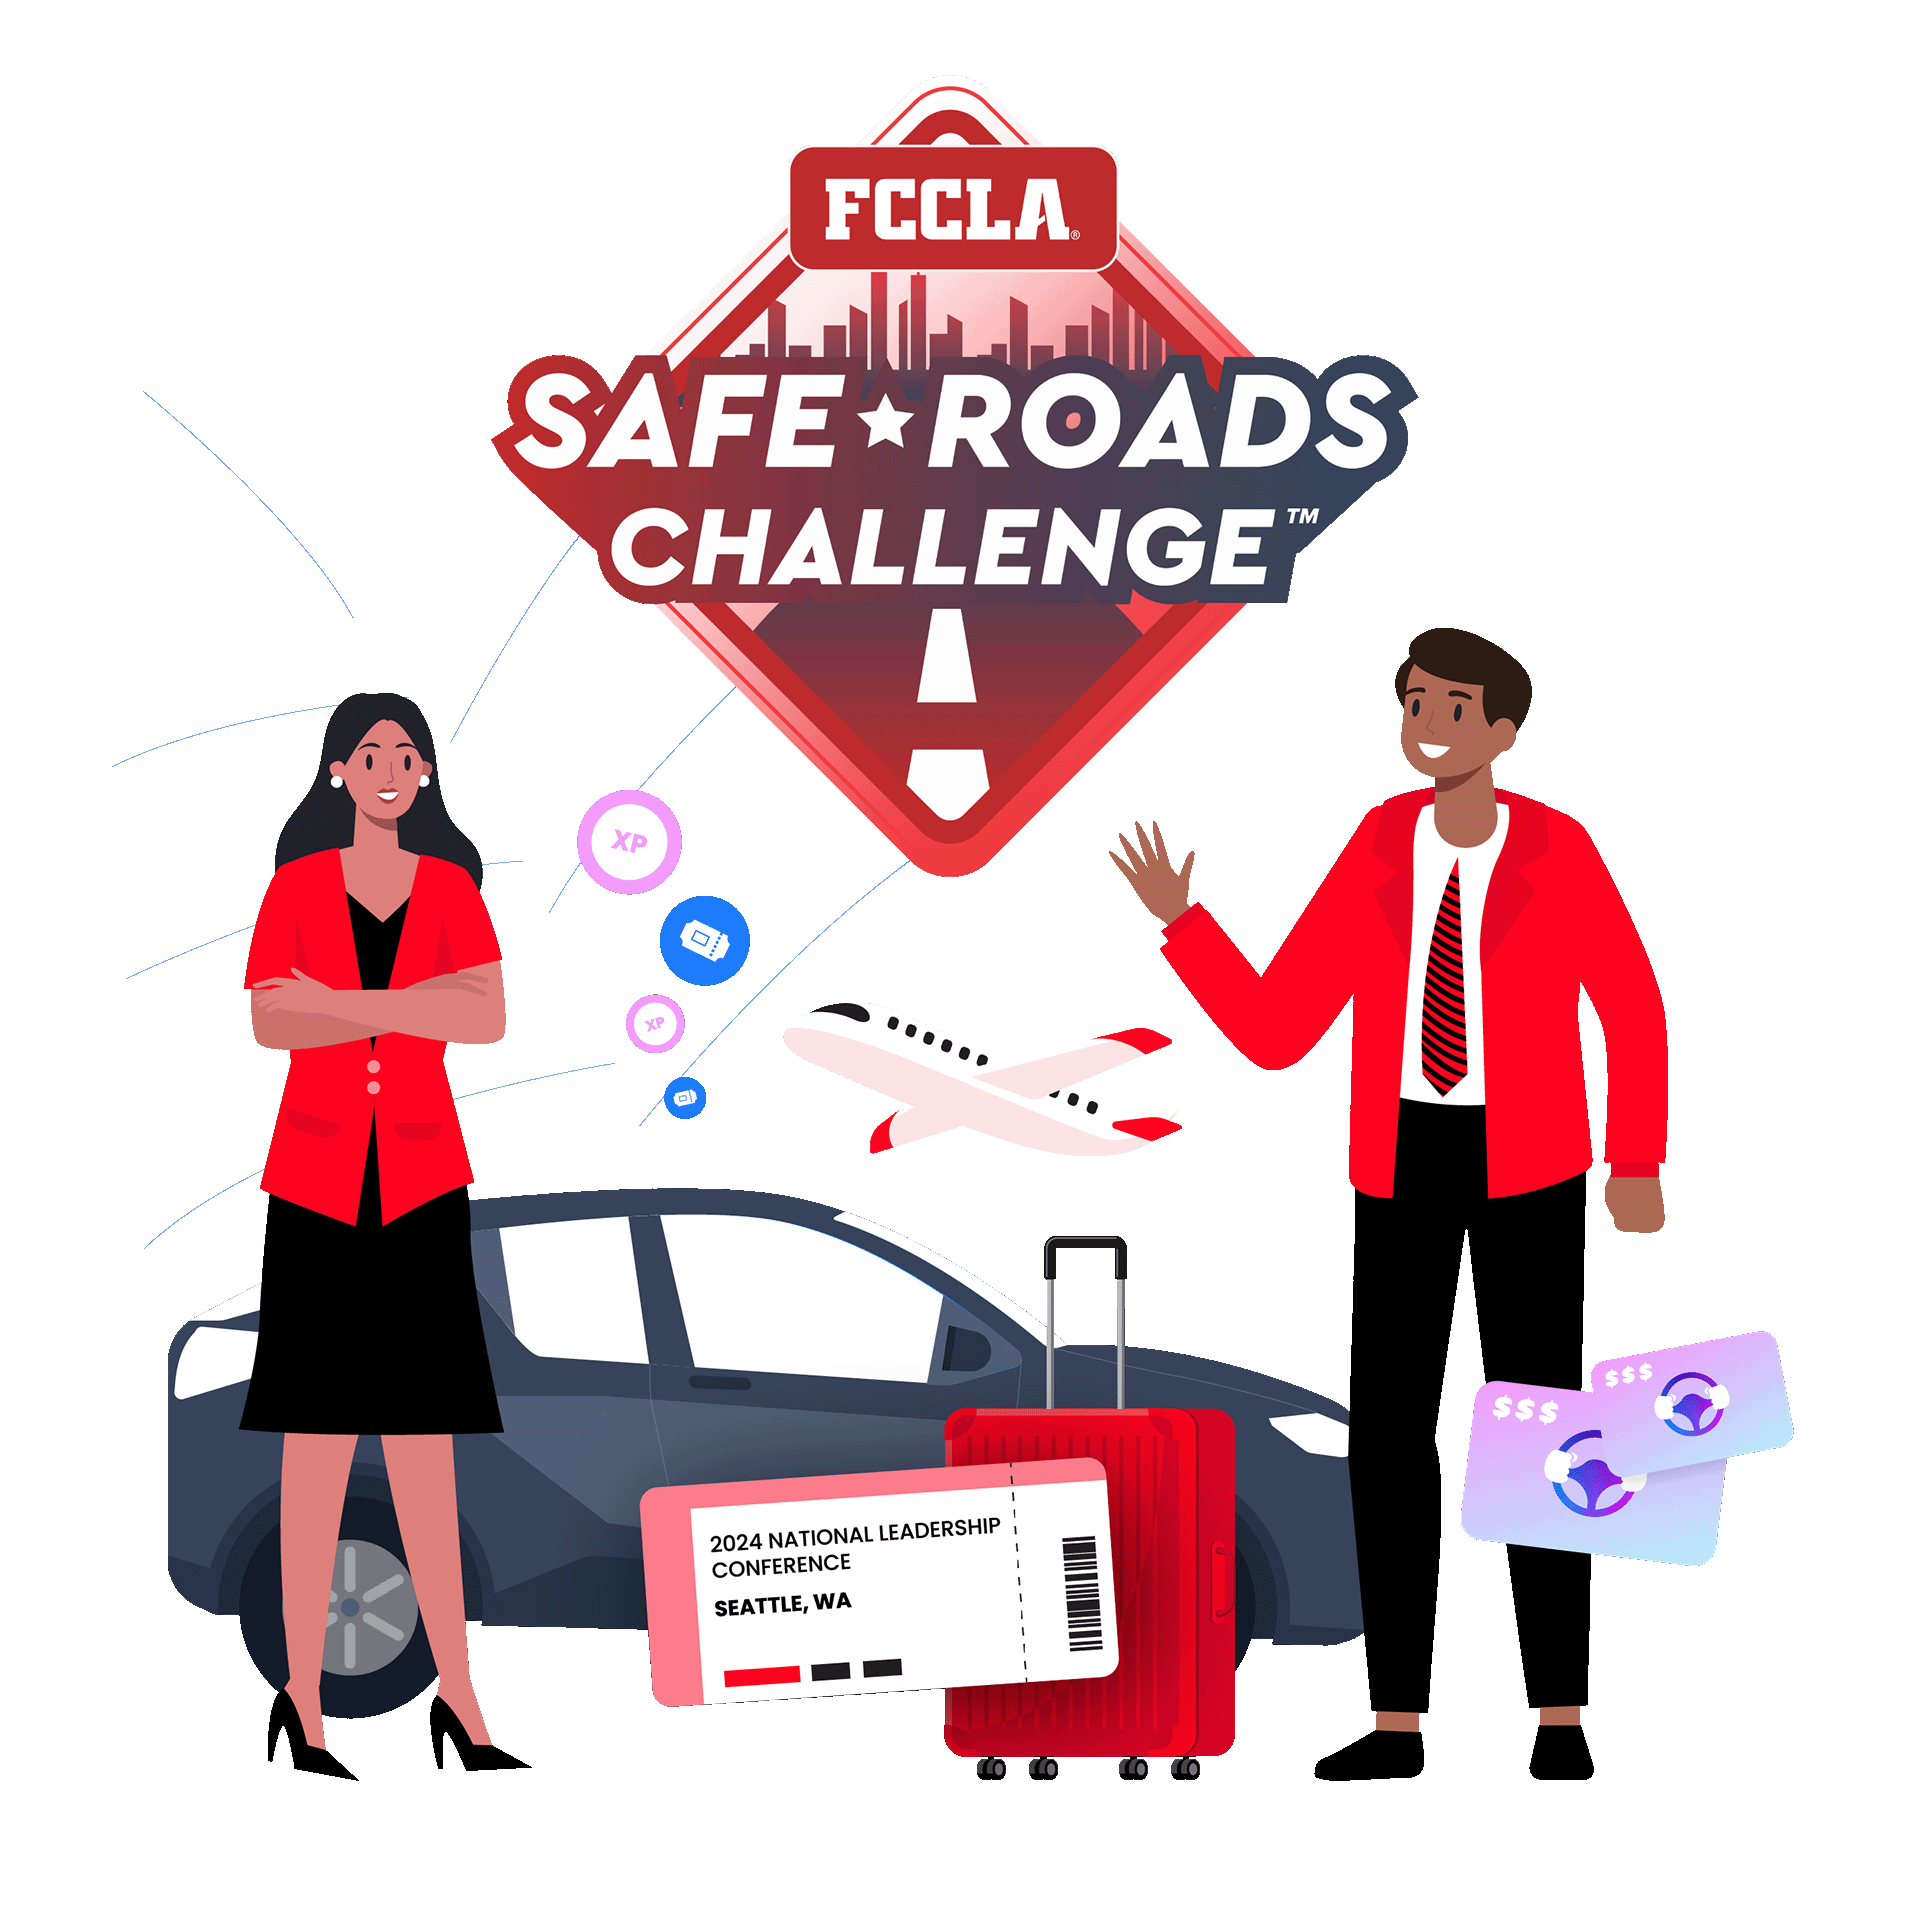 FCCLA Safe Roads Challenge Image